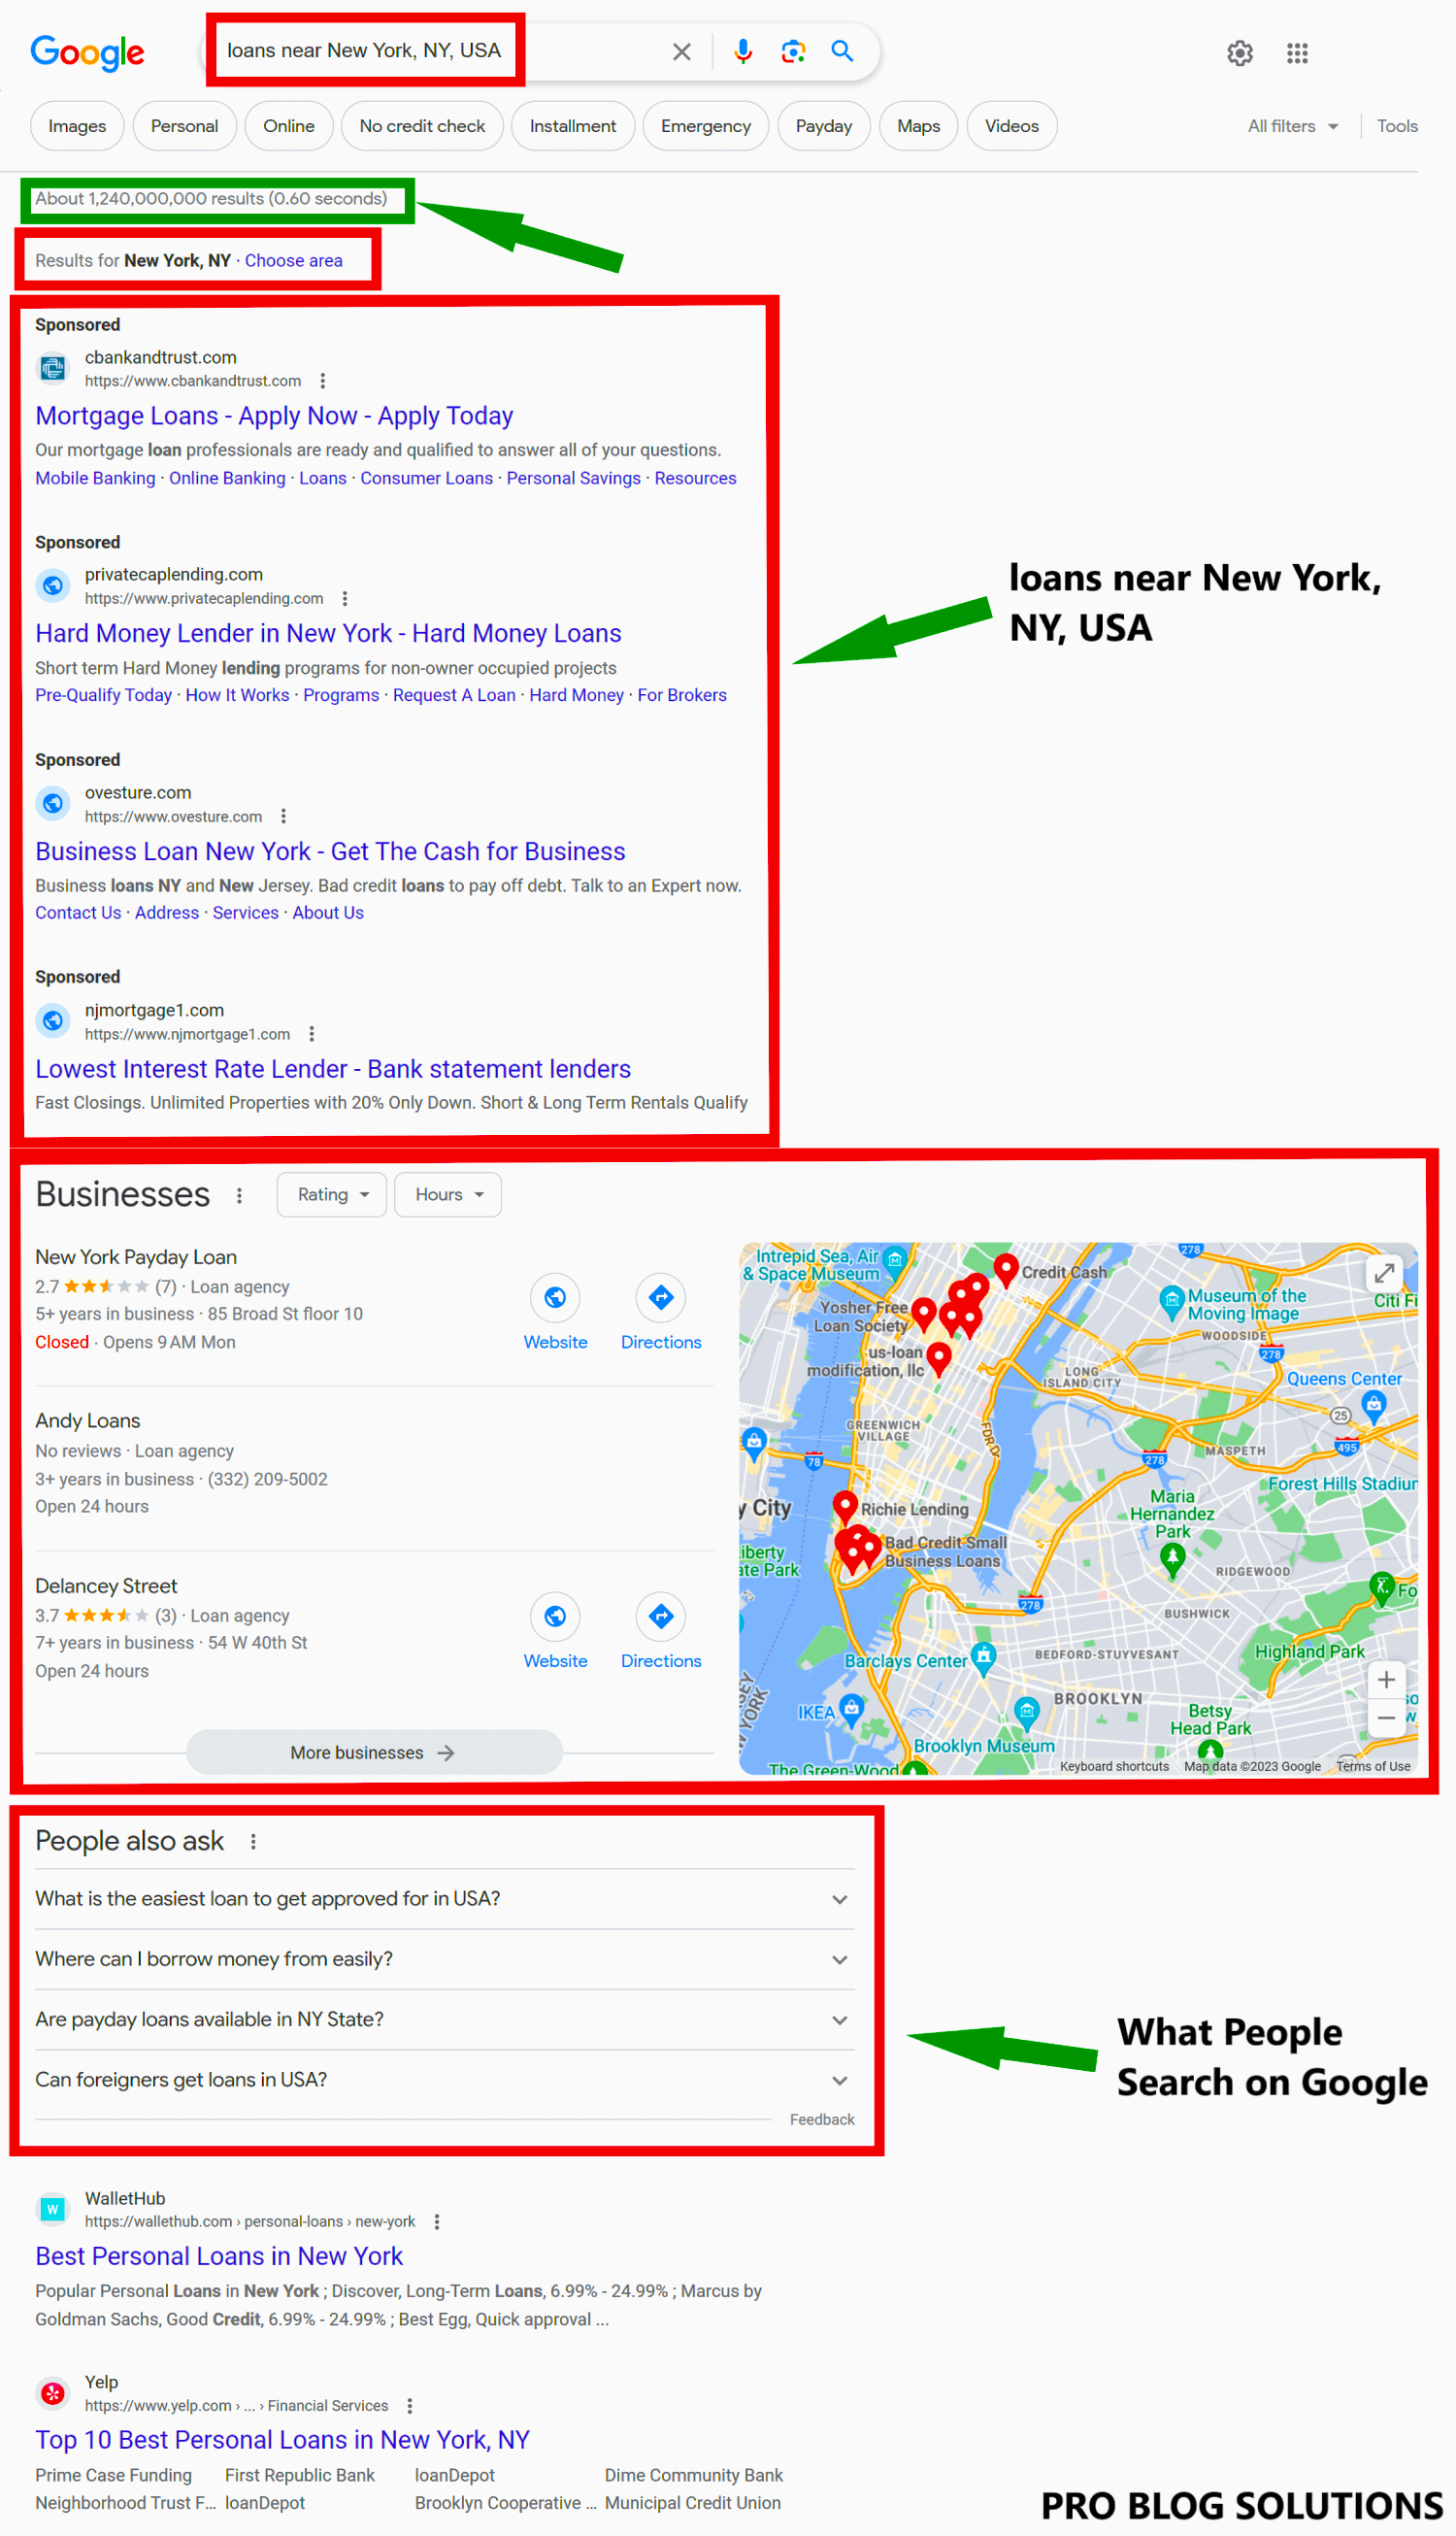 “Loans near New York, NY, USA” on Google Search